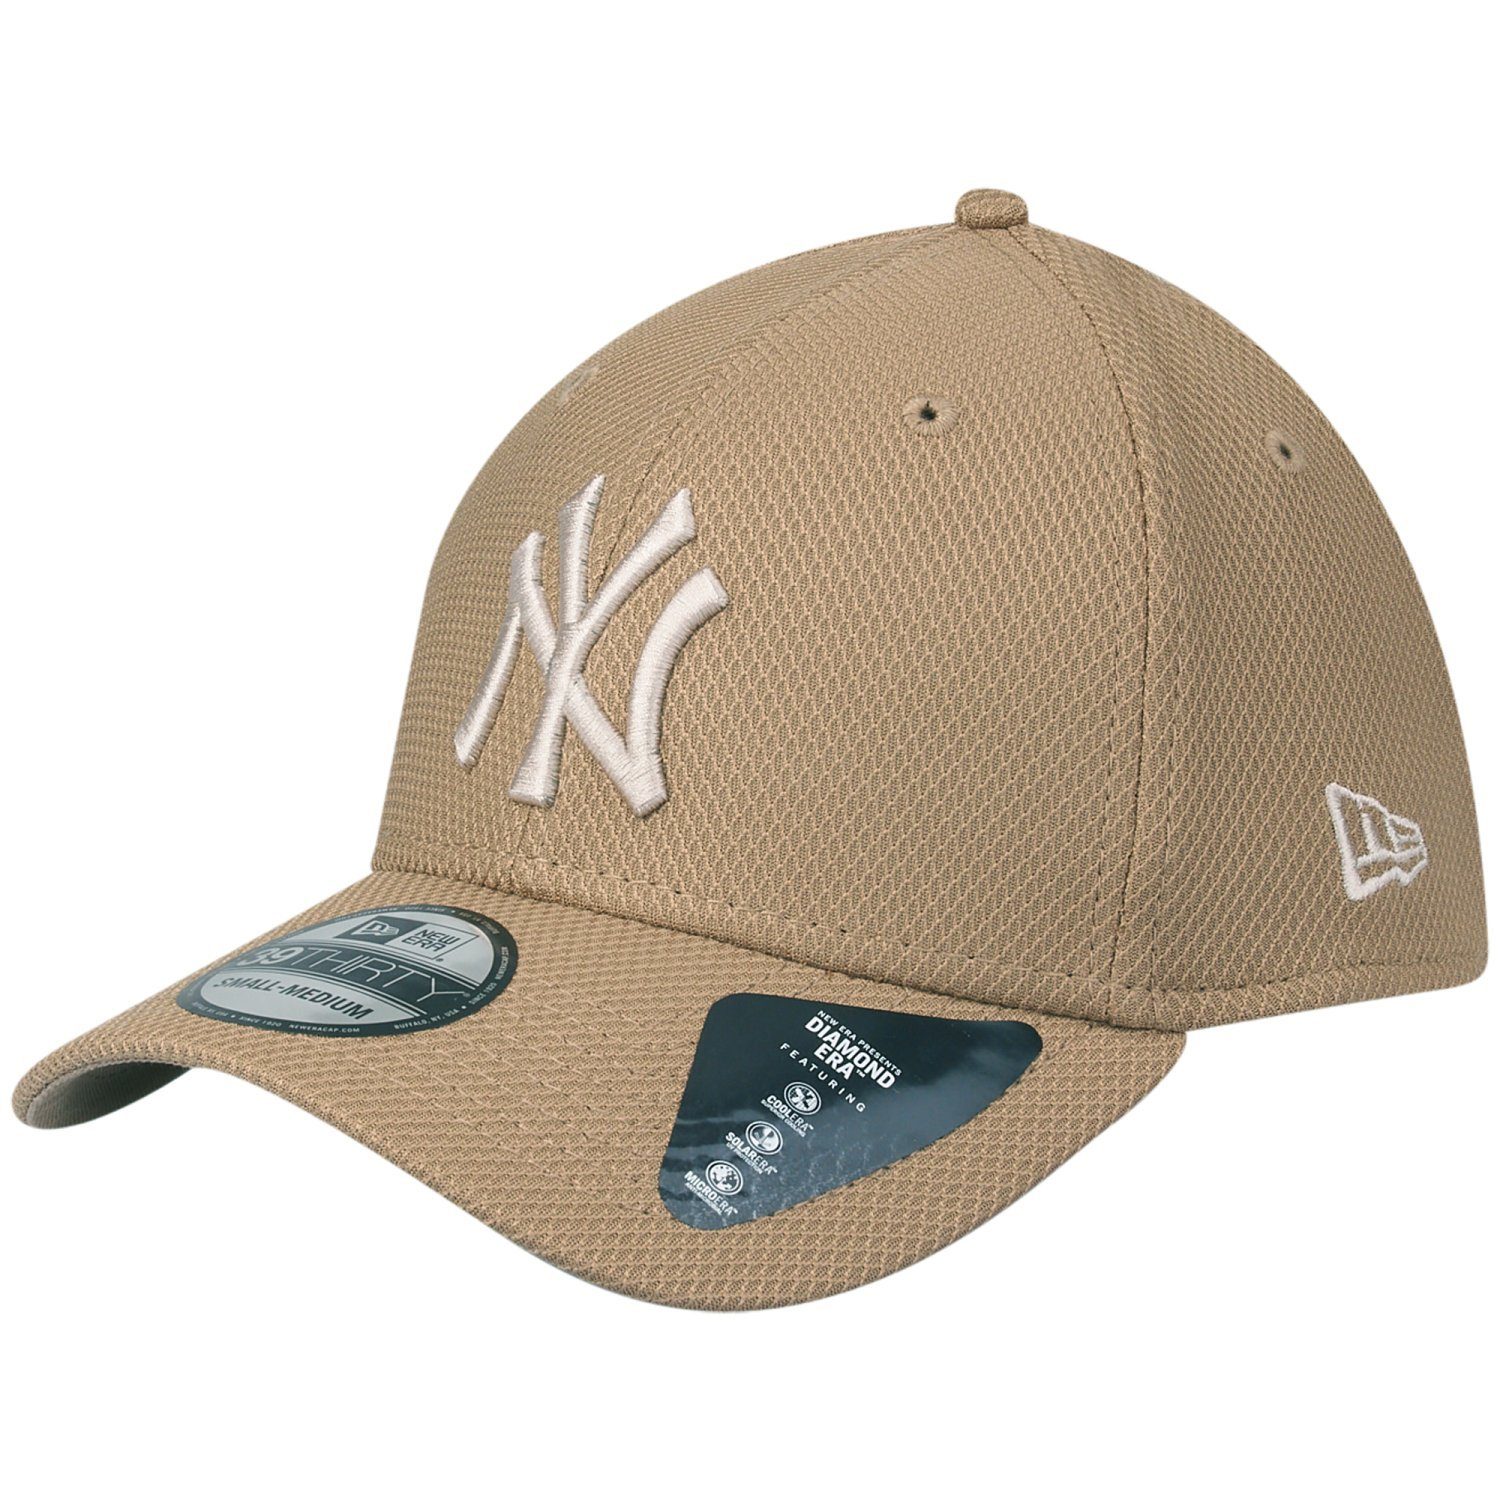 Era New Cap 39Thirty Flex York DIAMOND StretchFit Yankees Khaki New